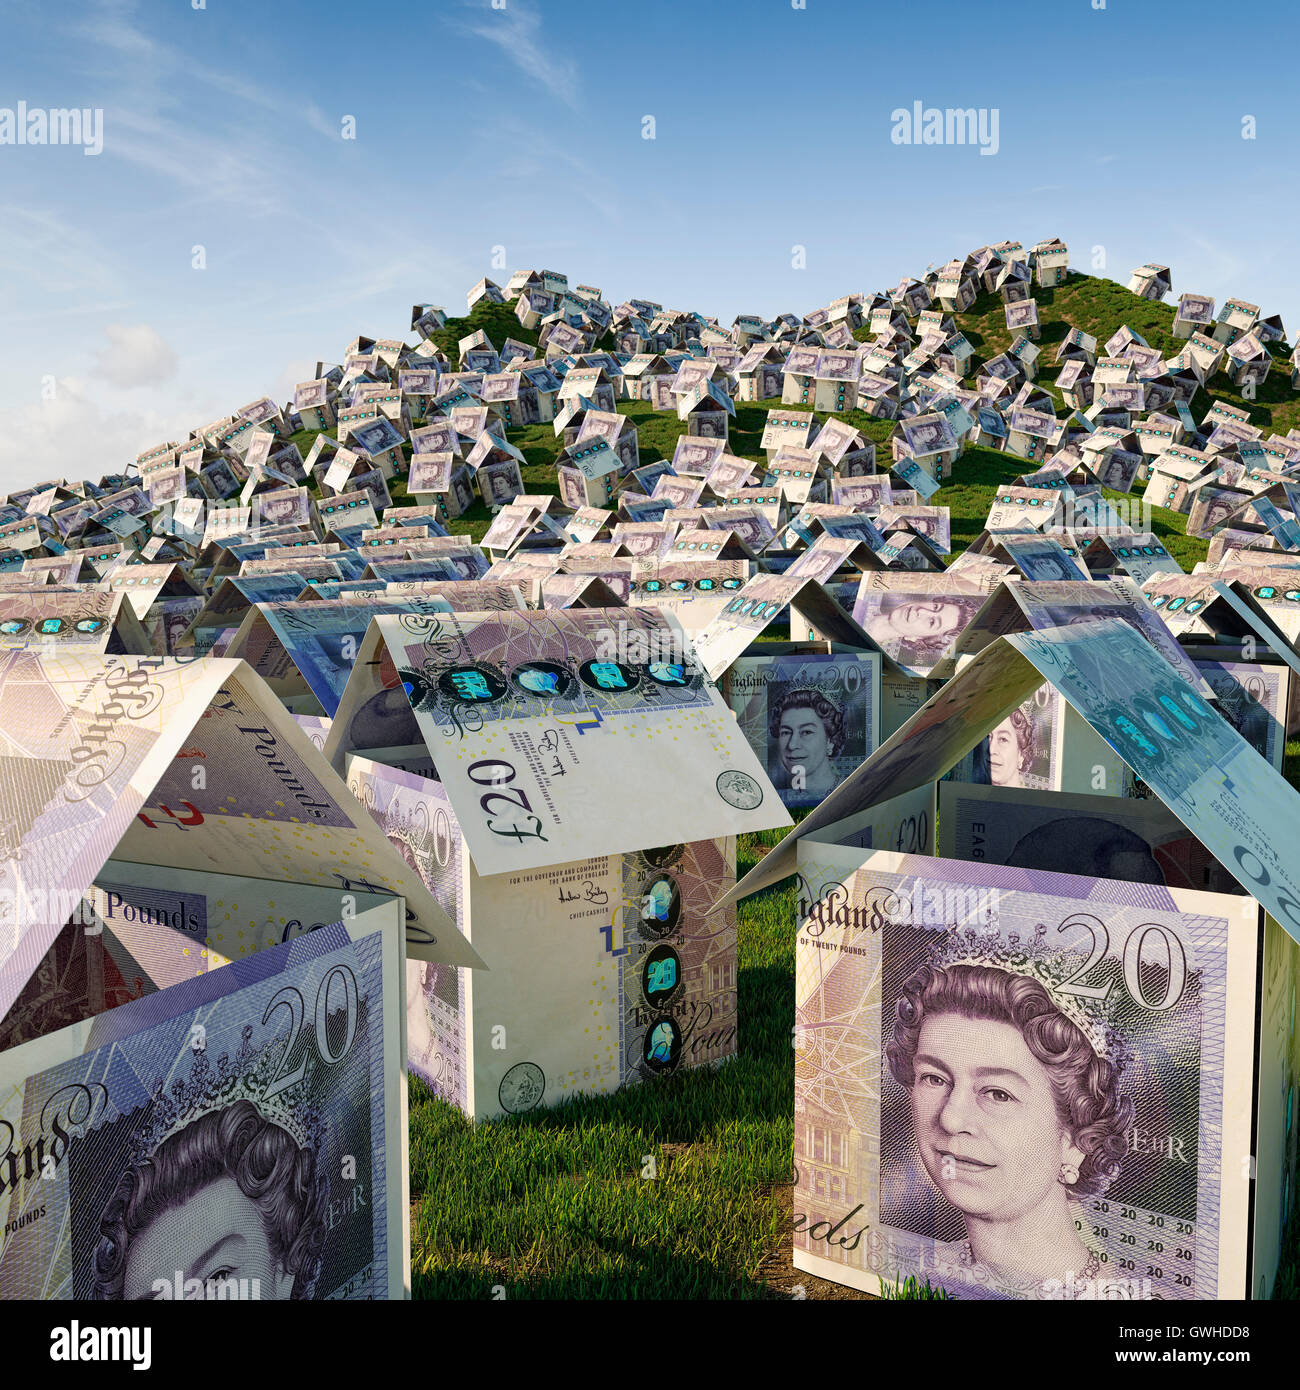 Crisis de la vivienda en el Reino Unido - El concepto de construcción de viviendas, los precios de la vivienda y el concepto de desarrollo de la urbanización. Foto de stock